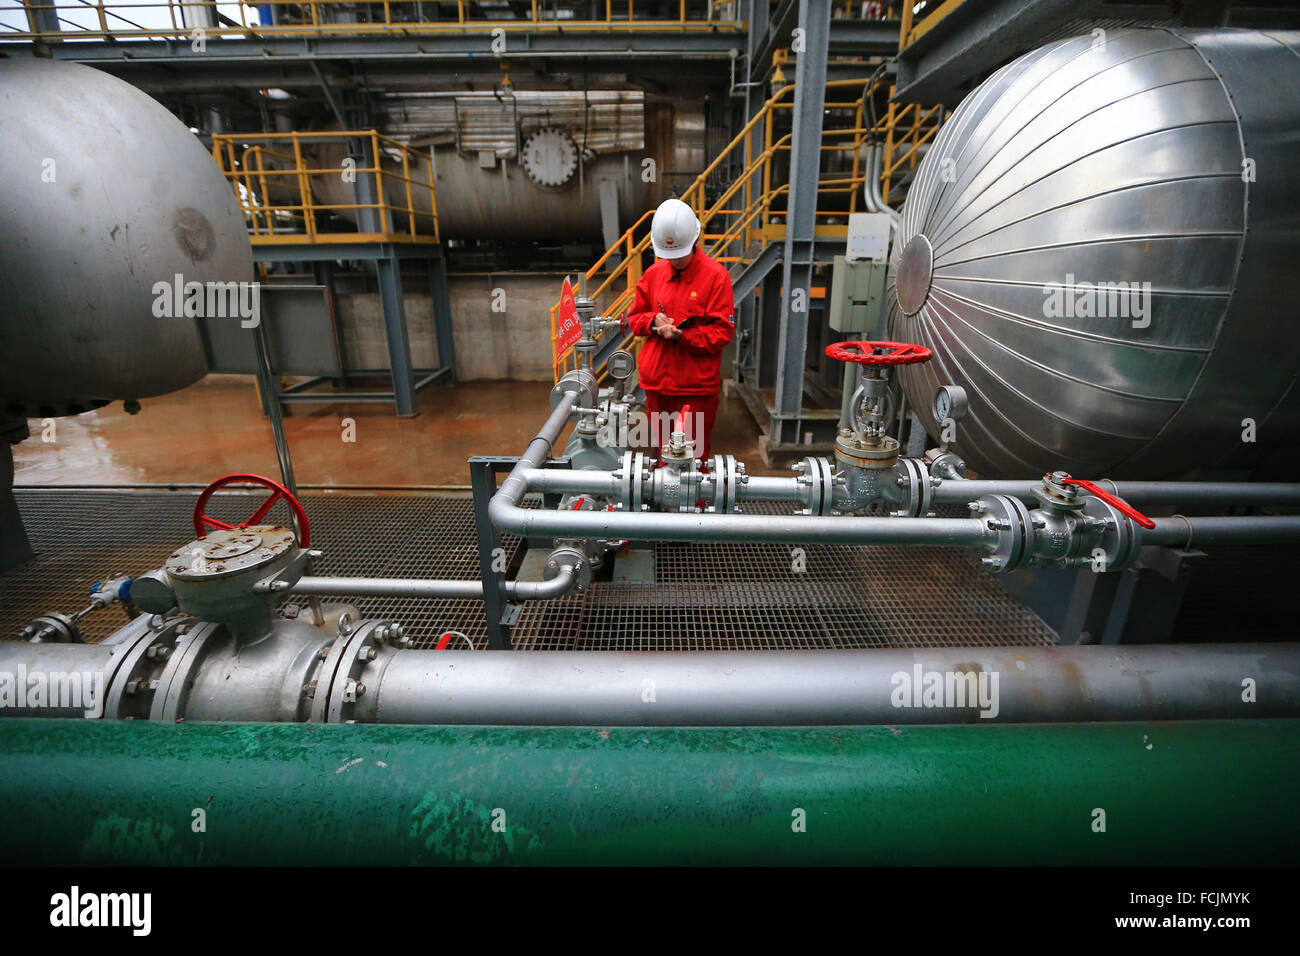 (160123) -- SUINING, 23 janvier 2016 (Xinhua) -- un travailleur enregistre des données à une station d'épuration de gaz naturel de l'Longwangmiao Réservoir à gaz FM dans la ville de Suining, dans le sud-ouest de la province chinoise du Sichuan, le 22 janvier 2016. Le réservoir de gaz FM Longwangmiao, situé dans la partie centrale du bassin du Sichuan, a été découvert en septembre 2012 et a été mis en production avec une production de gaz manuelle 11 milliards de mètres cubes en octobre 2015. Avec des gaz en place de 440,383 milliards de mètres cubes, il est si loin le plus uncompartmentalized marine monomère de réservoir à gaz en Chine. (Xinhua/Zhong Min) (lfj) Banque D'Images